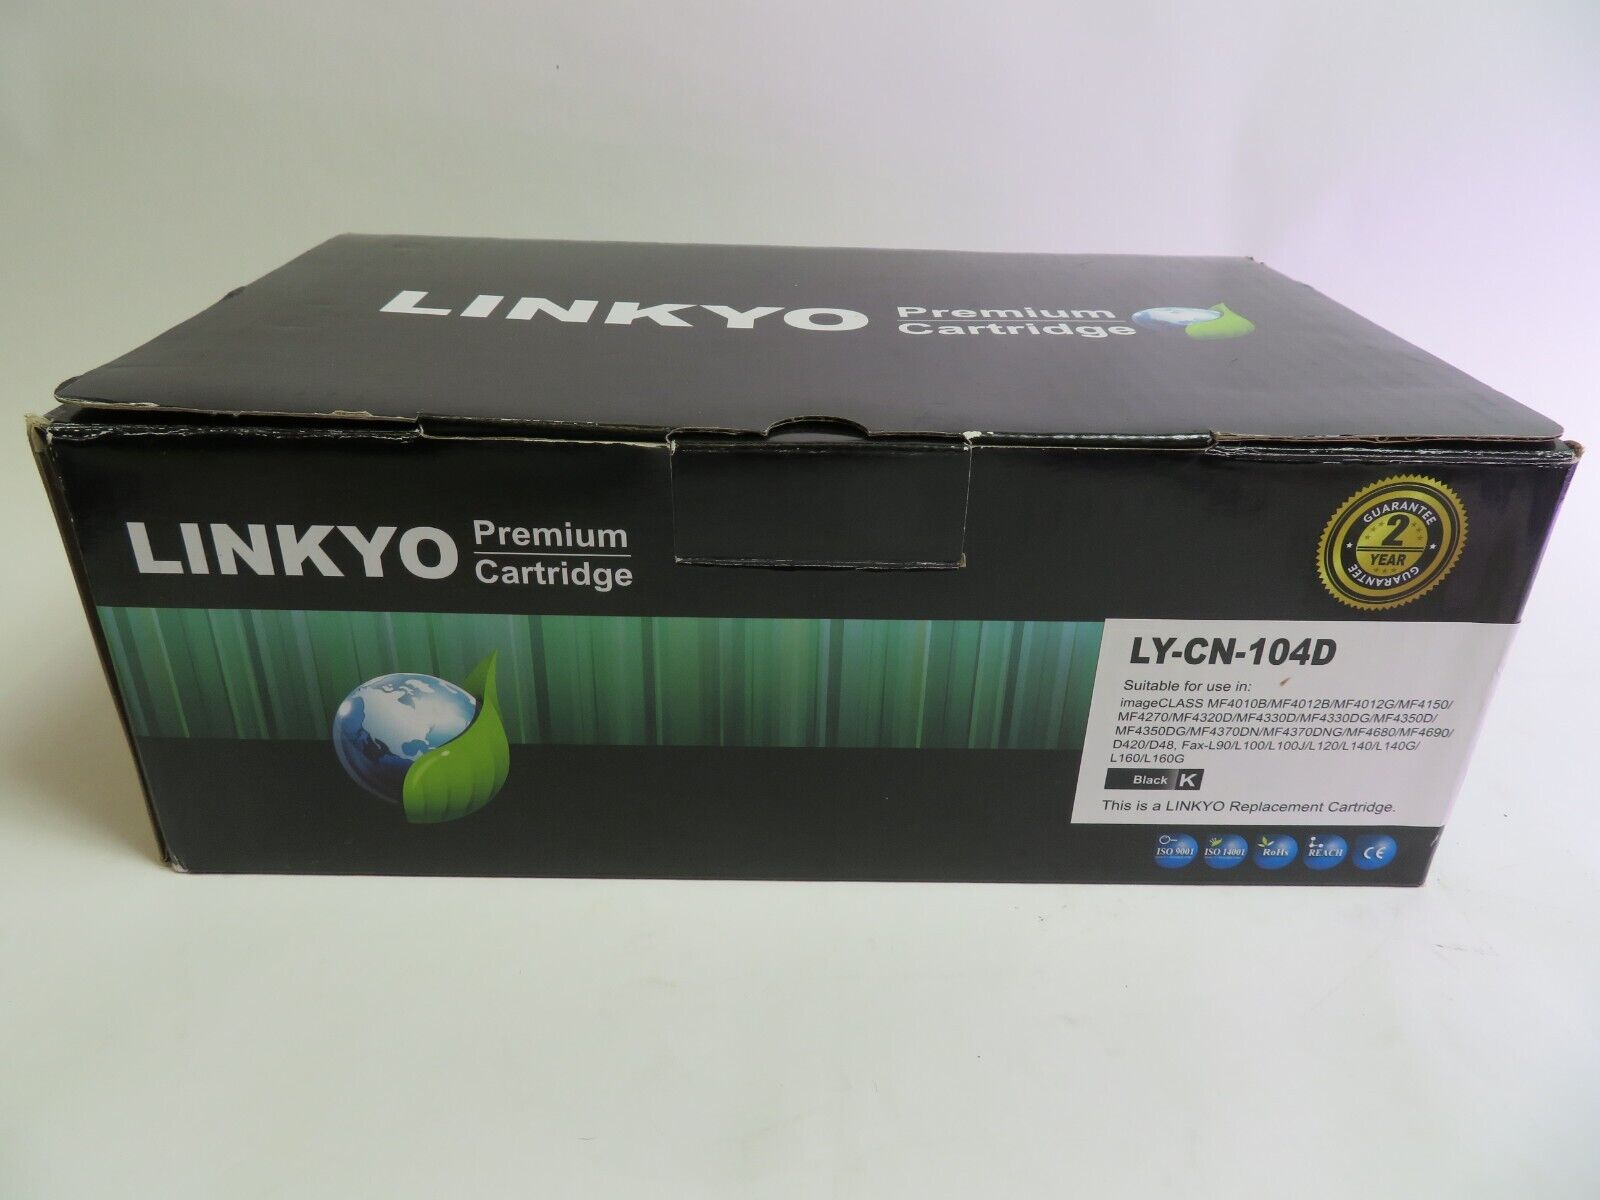 Linkyo Premium Cartridge 2-Pack LY-CN-104D Black Printer Toner NEW